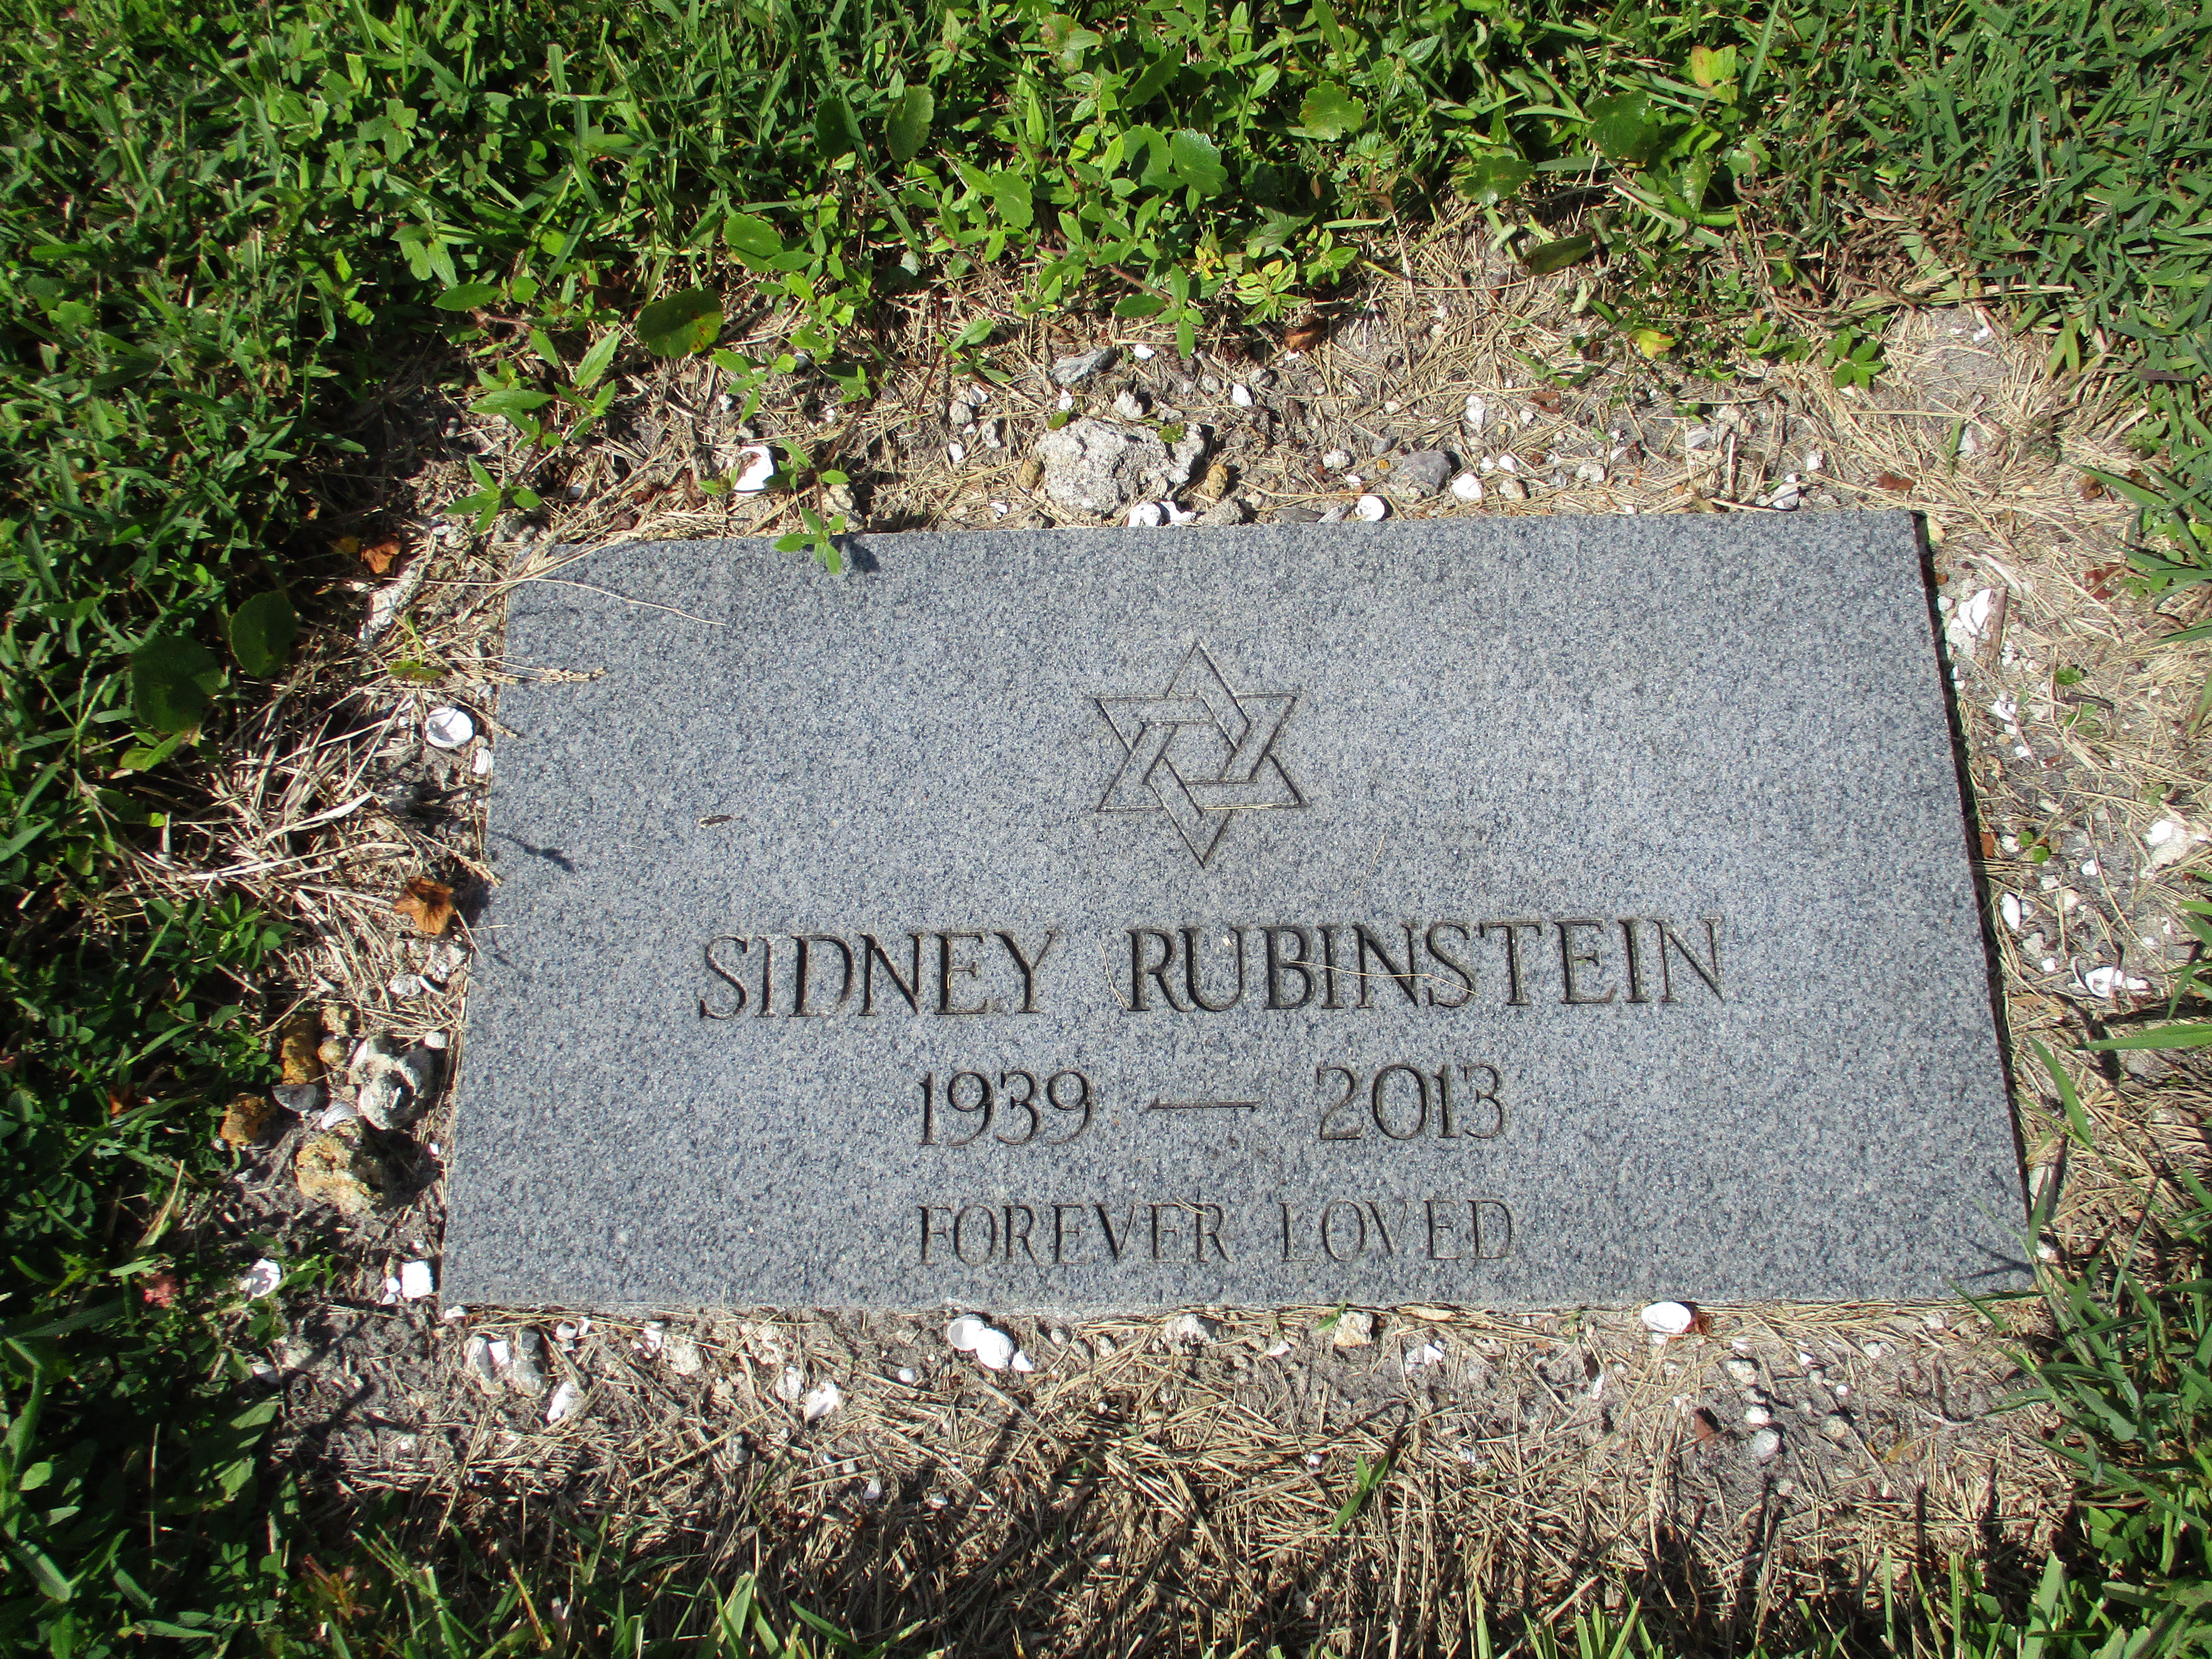 Sidney Rubinstein